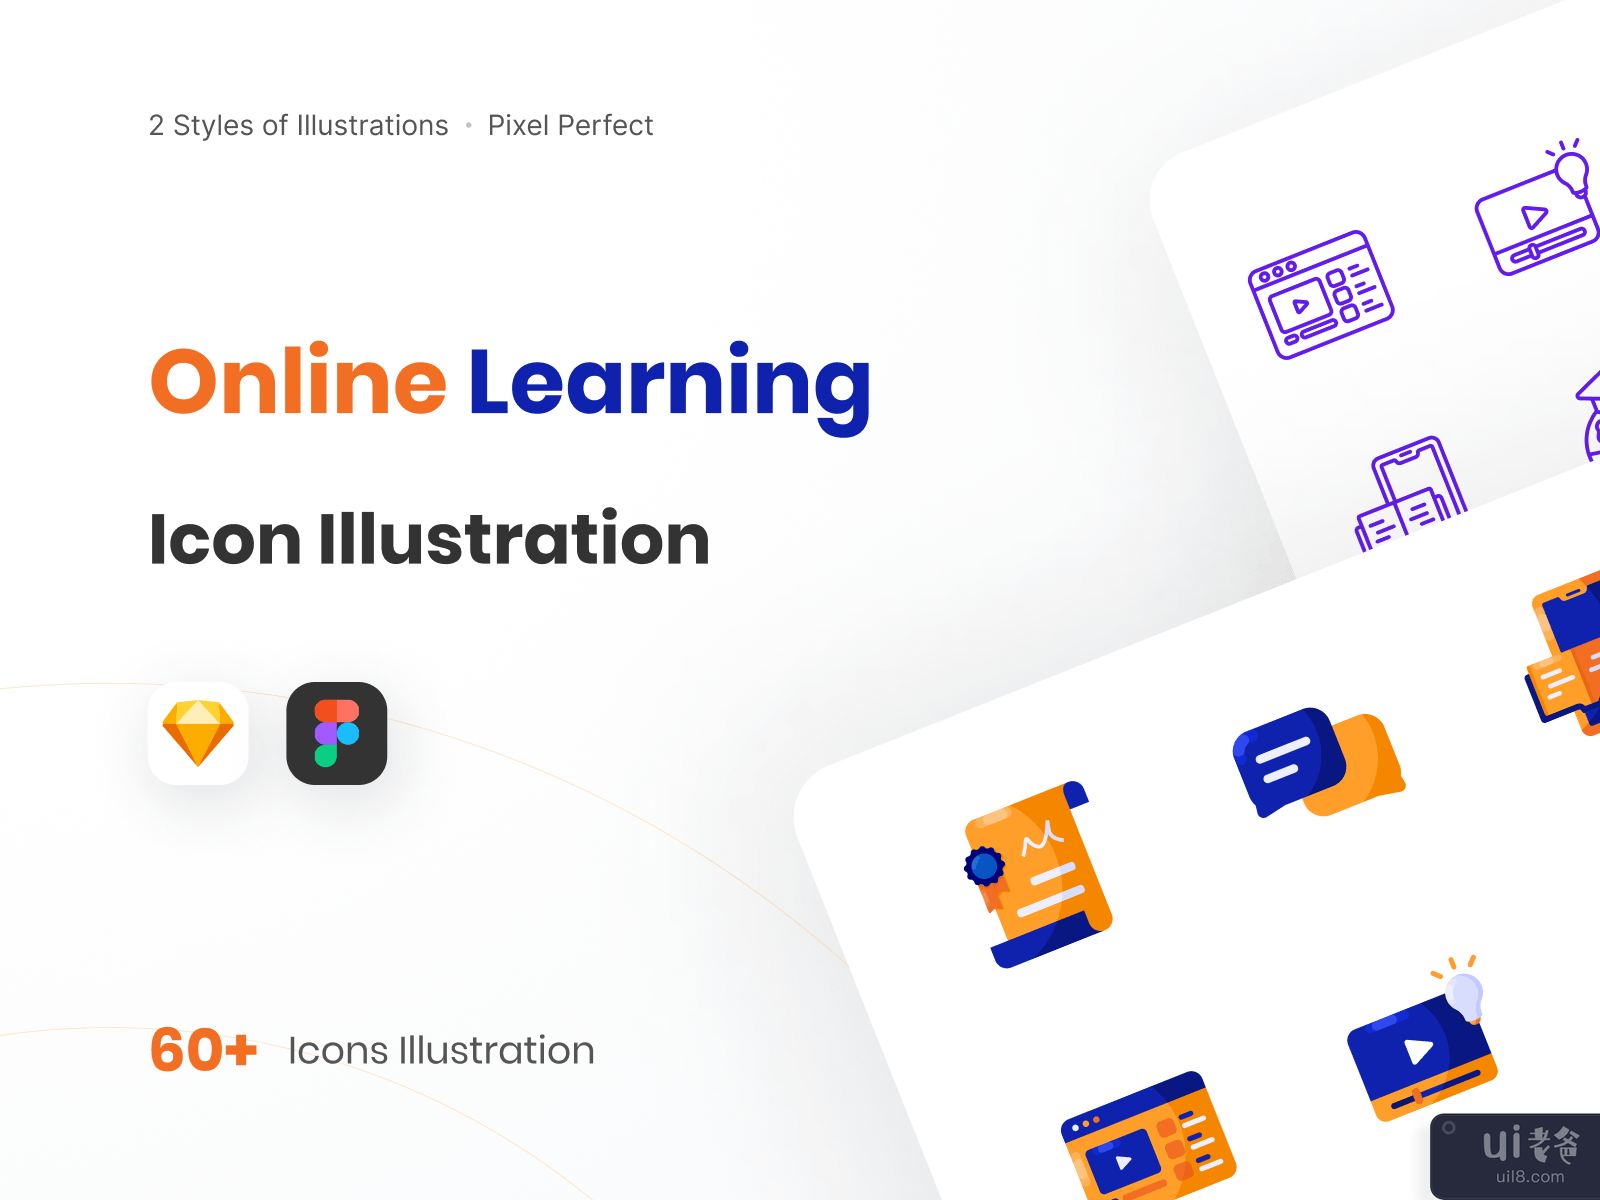 在线学习图标说明-教育图标集(Online Learning Icon Illustration - Education Icon Set)插图